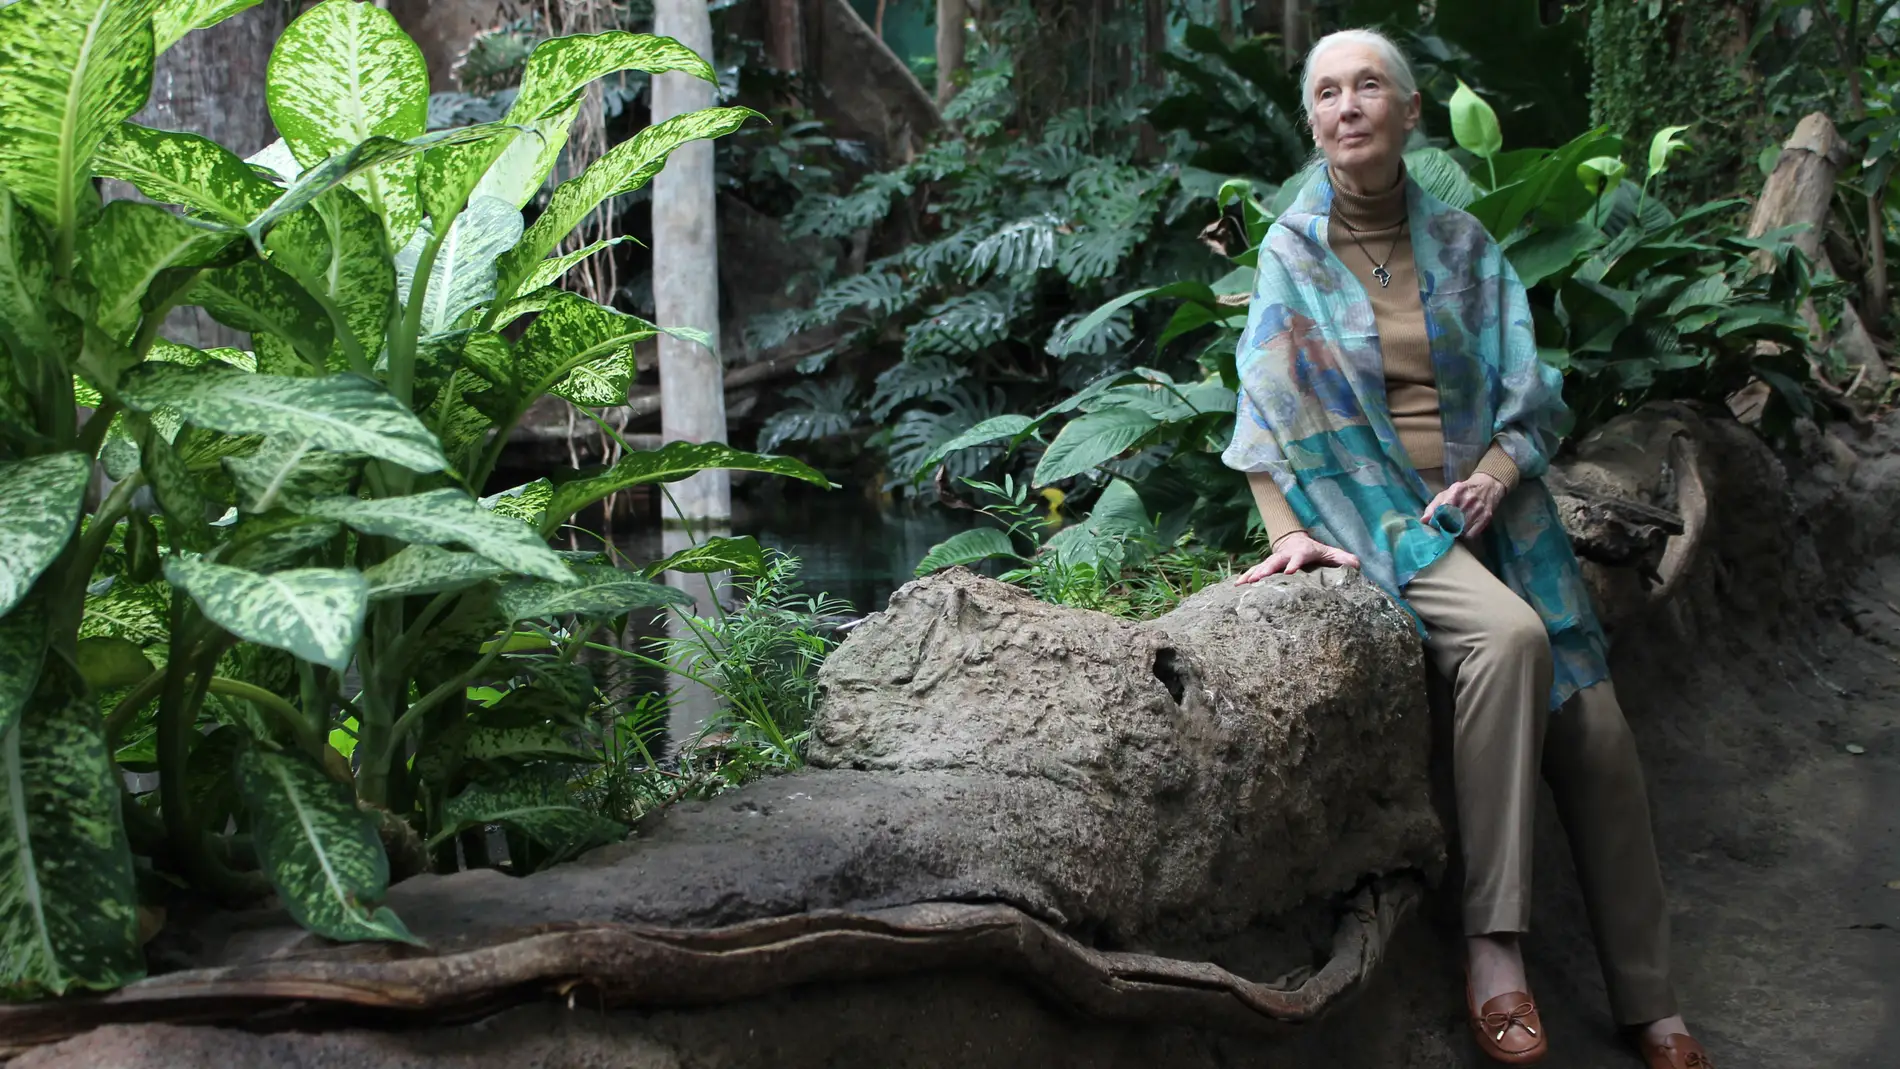 Jane Goodall Estamos viviendo la sexta extincion masiva de especies causada por nosotros